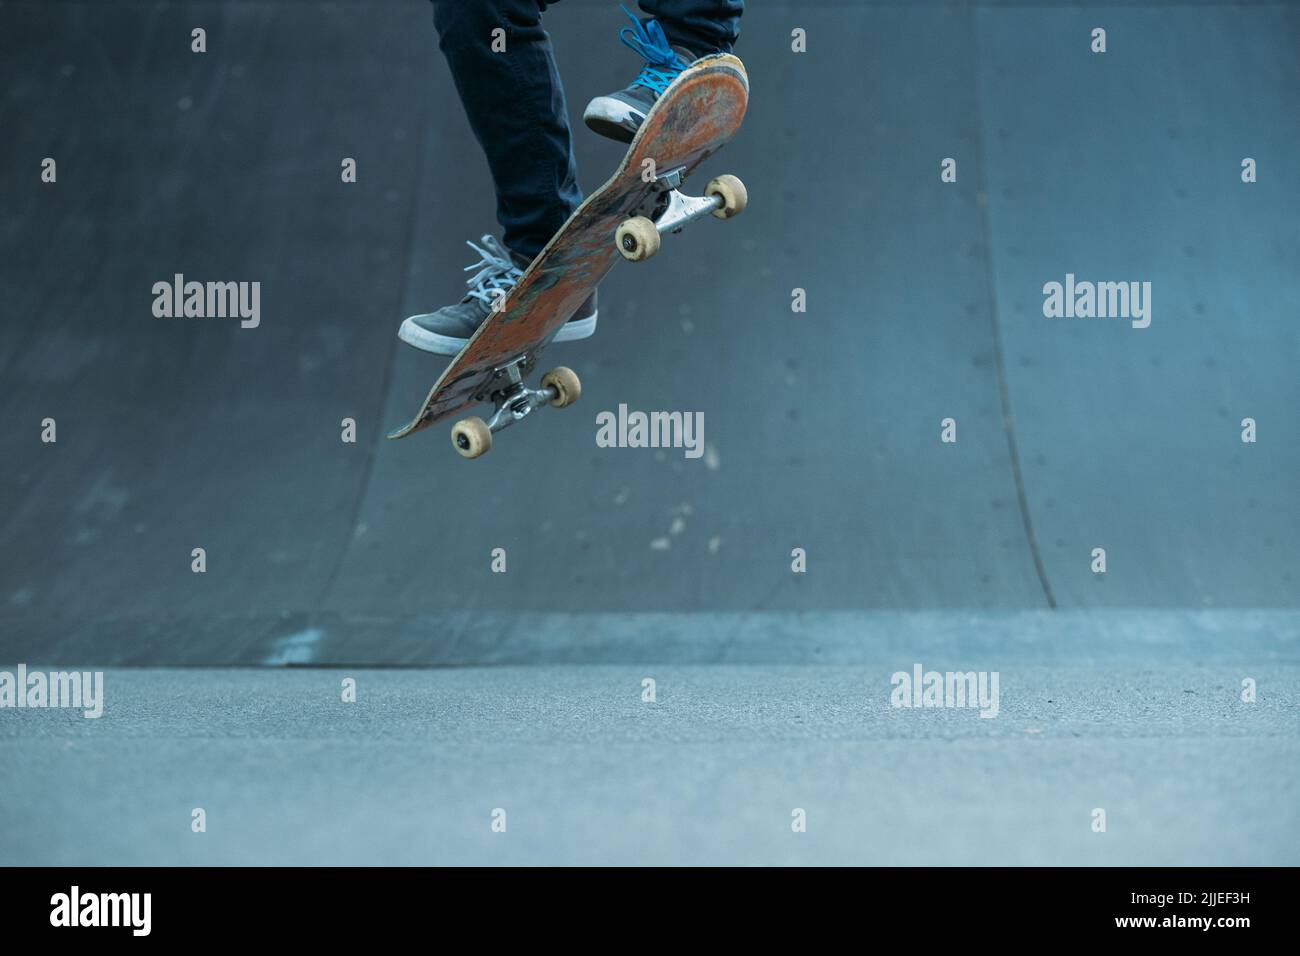 skateboarder azione estrema lifestyle trick rampa Foto Stock